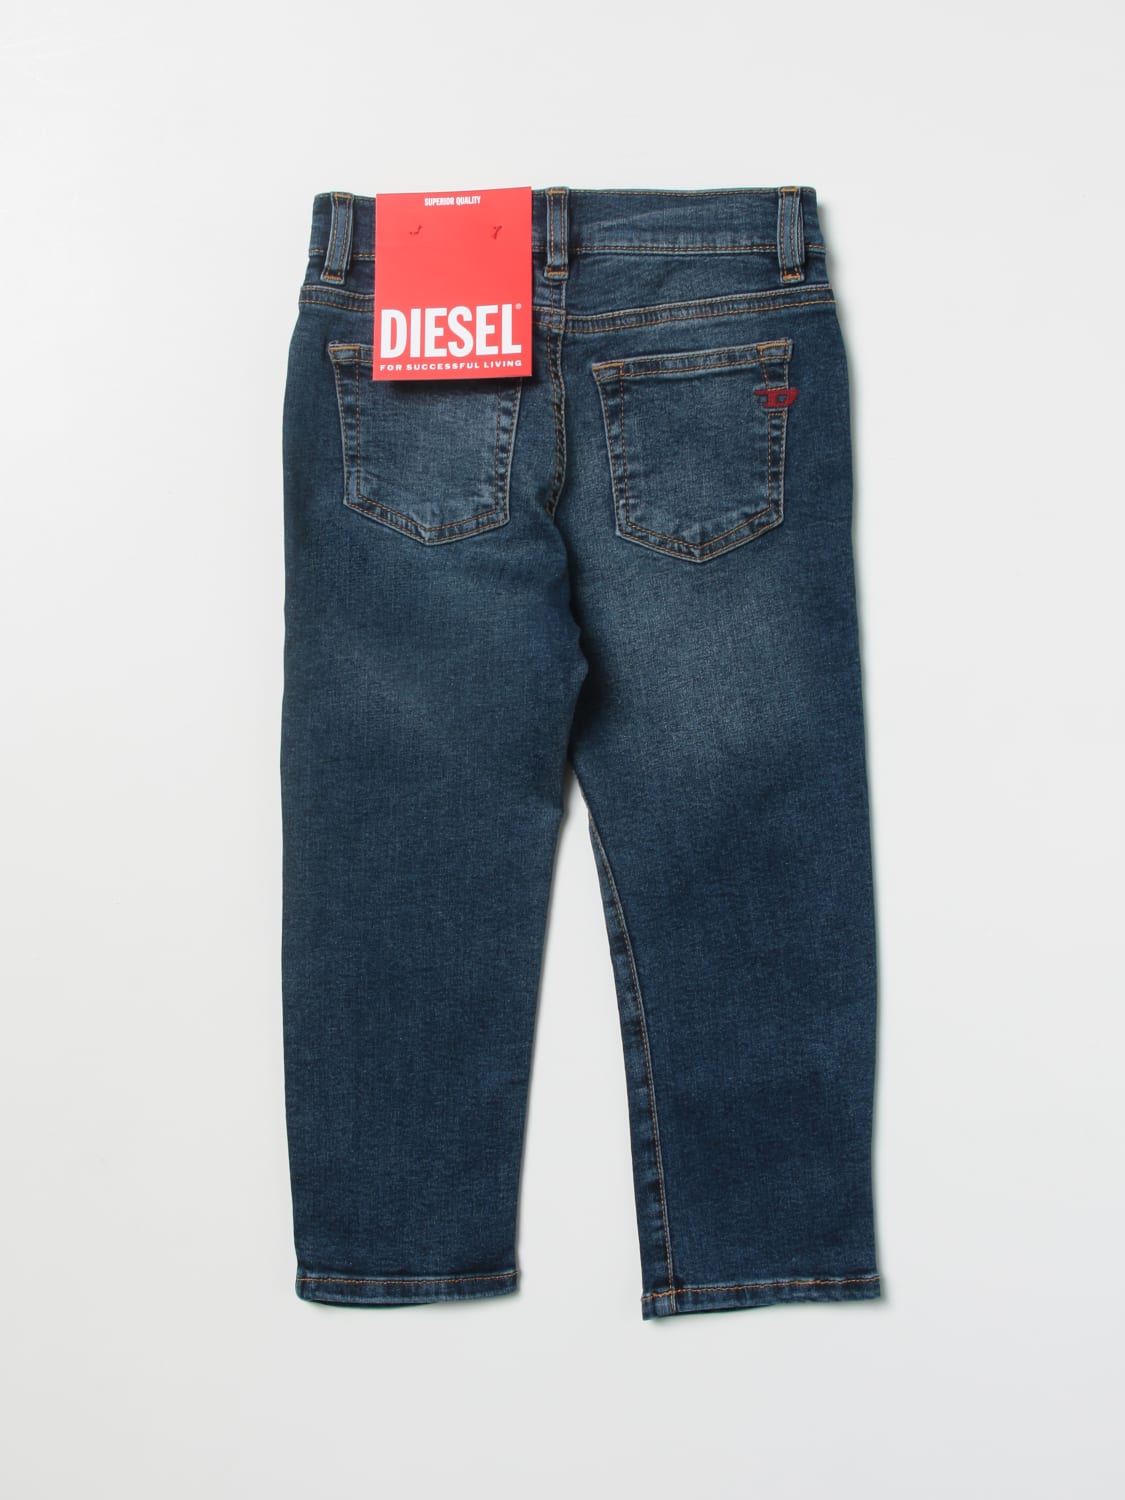 Romantik nøjagtigt Theseus Diesel Outlet: jeans for boys - Denim | Diesel jeans J00809KXBD1 online on  GIGLIO.COM